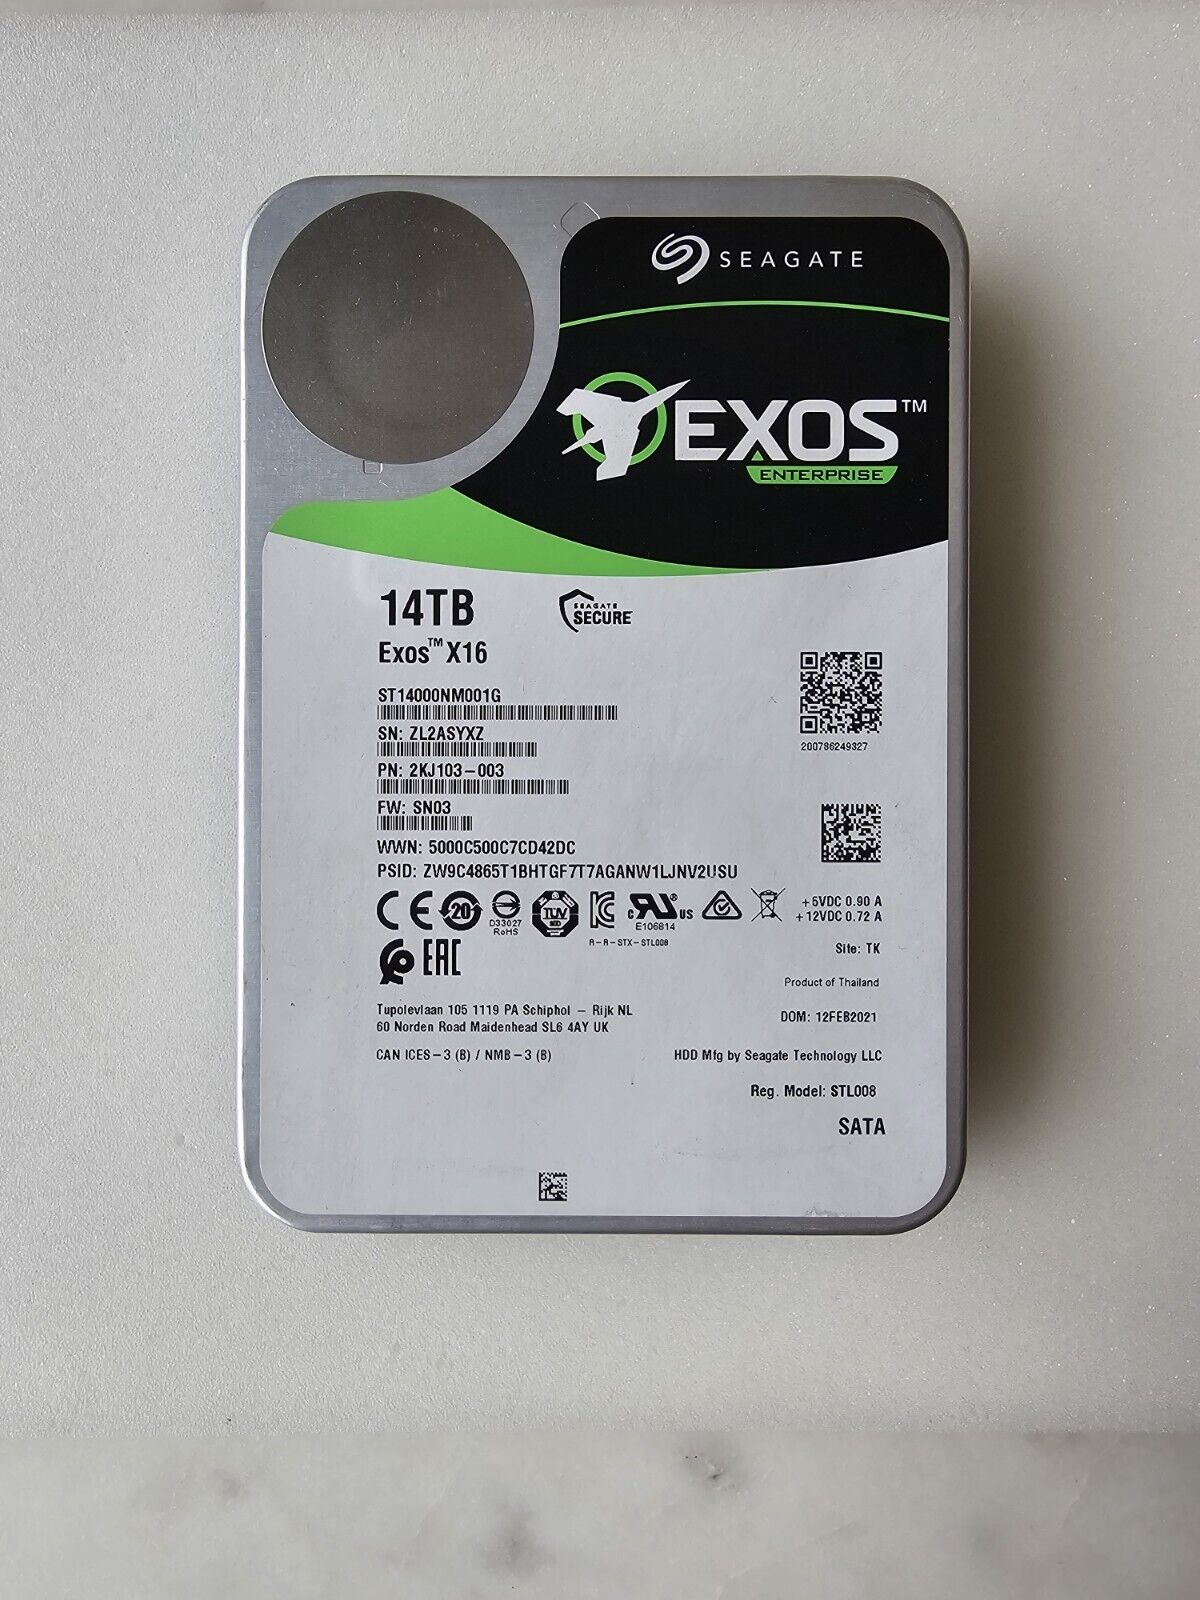 Seagate Exos X16 ST14000NM001G 14TB HDD SATA 6Gb/s 3.5\